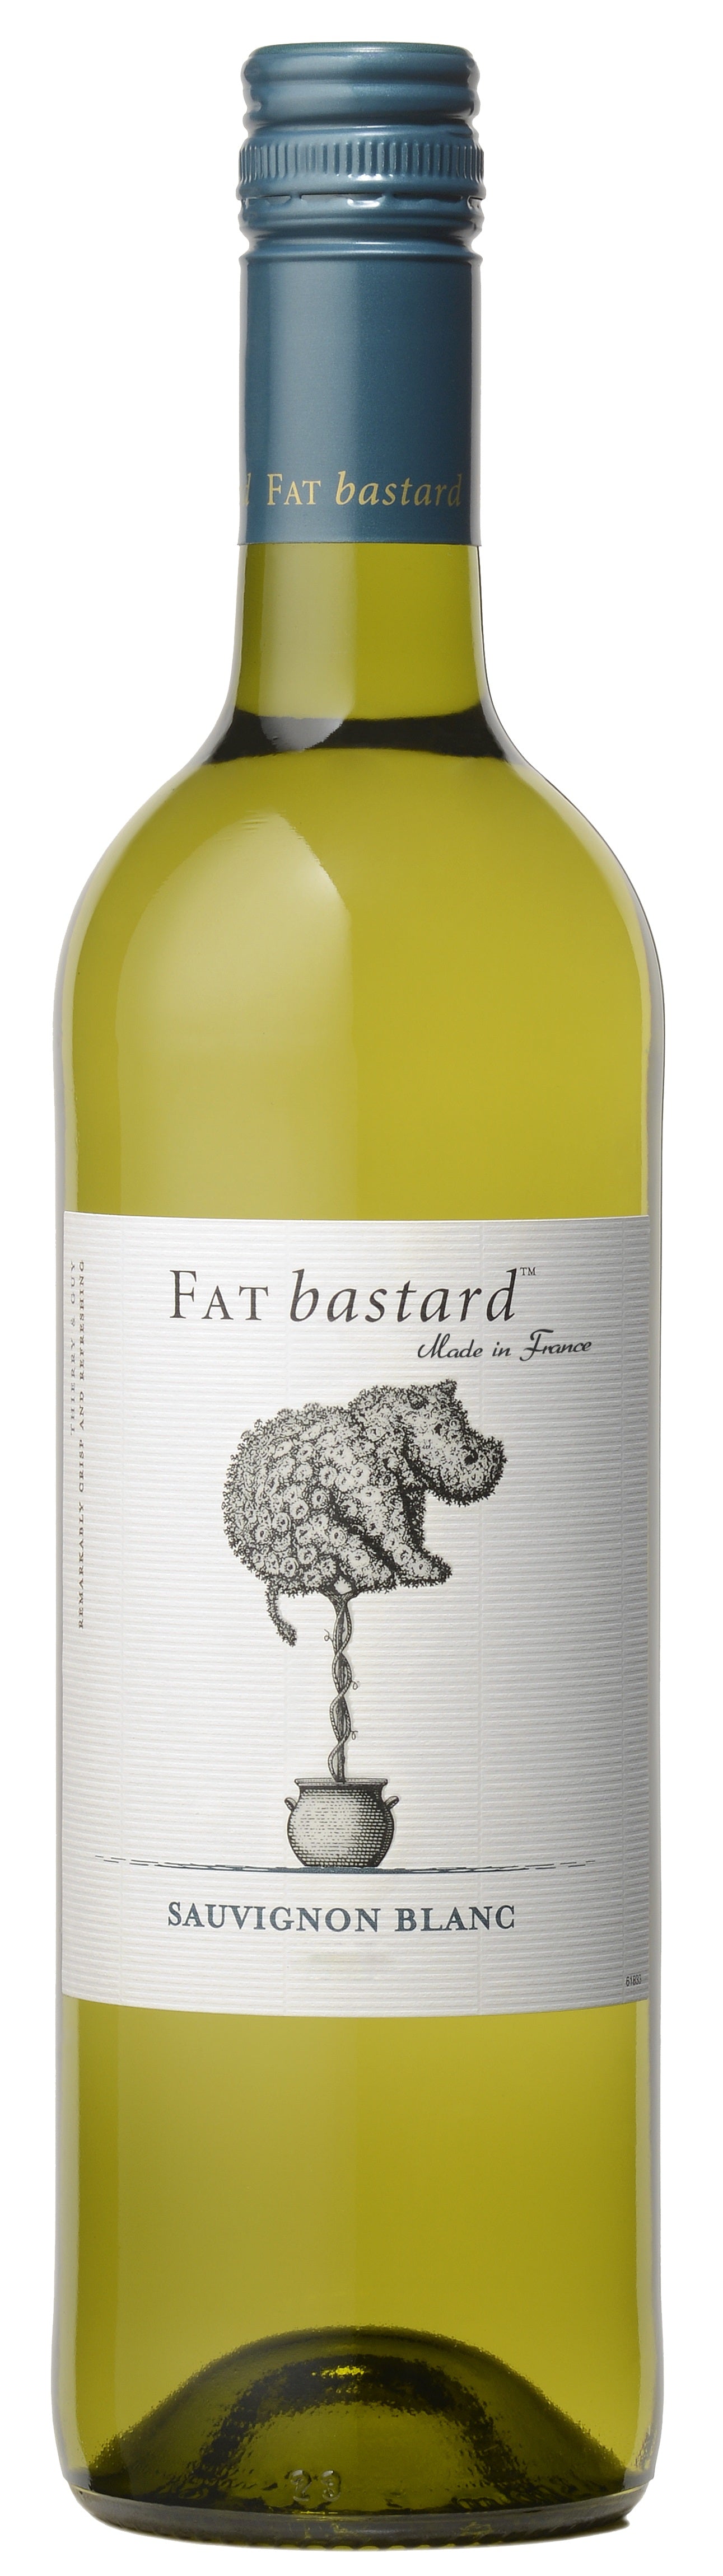 Fat Bastard Sauvignon Blanc 2019